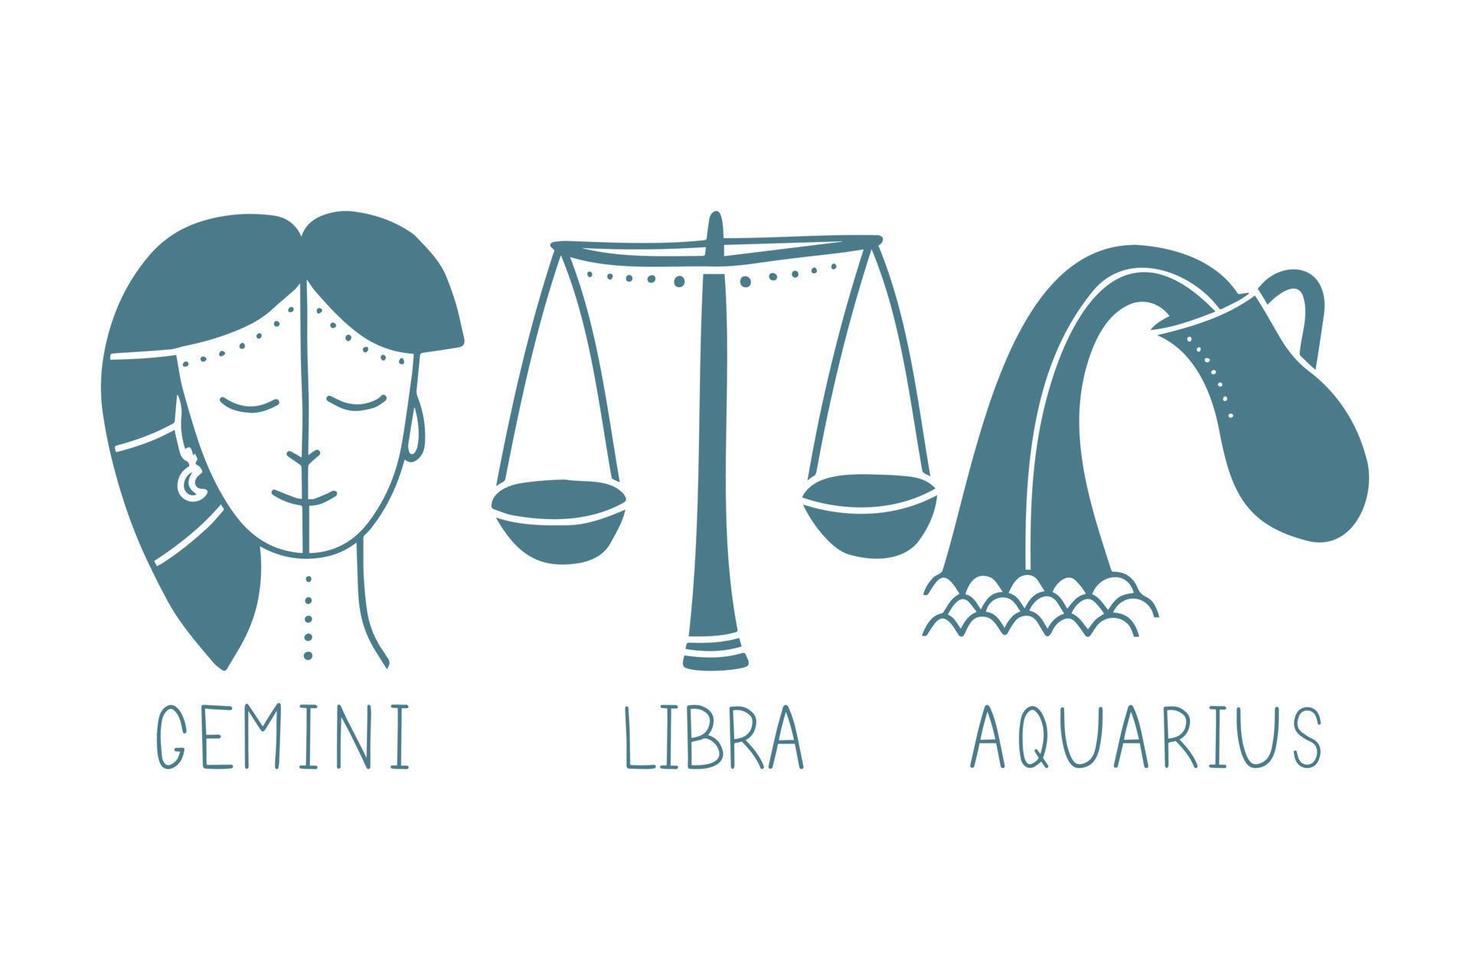 insieme di vettore dei segni zodiacali dell'aria. simboli 3 segni con iscrizioni. gemelli, bilancia e acquario. immagini vettoriali di segni zodiacali per astrologia e oroscopi.